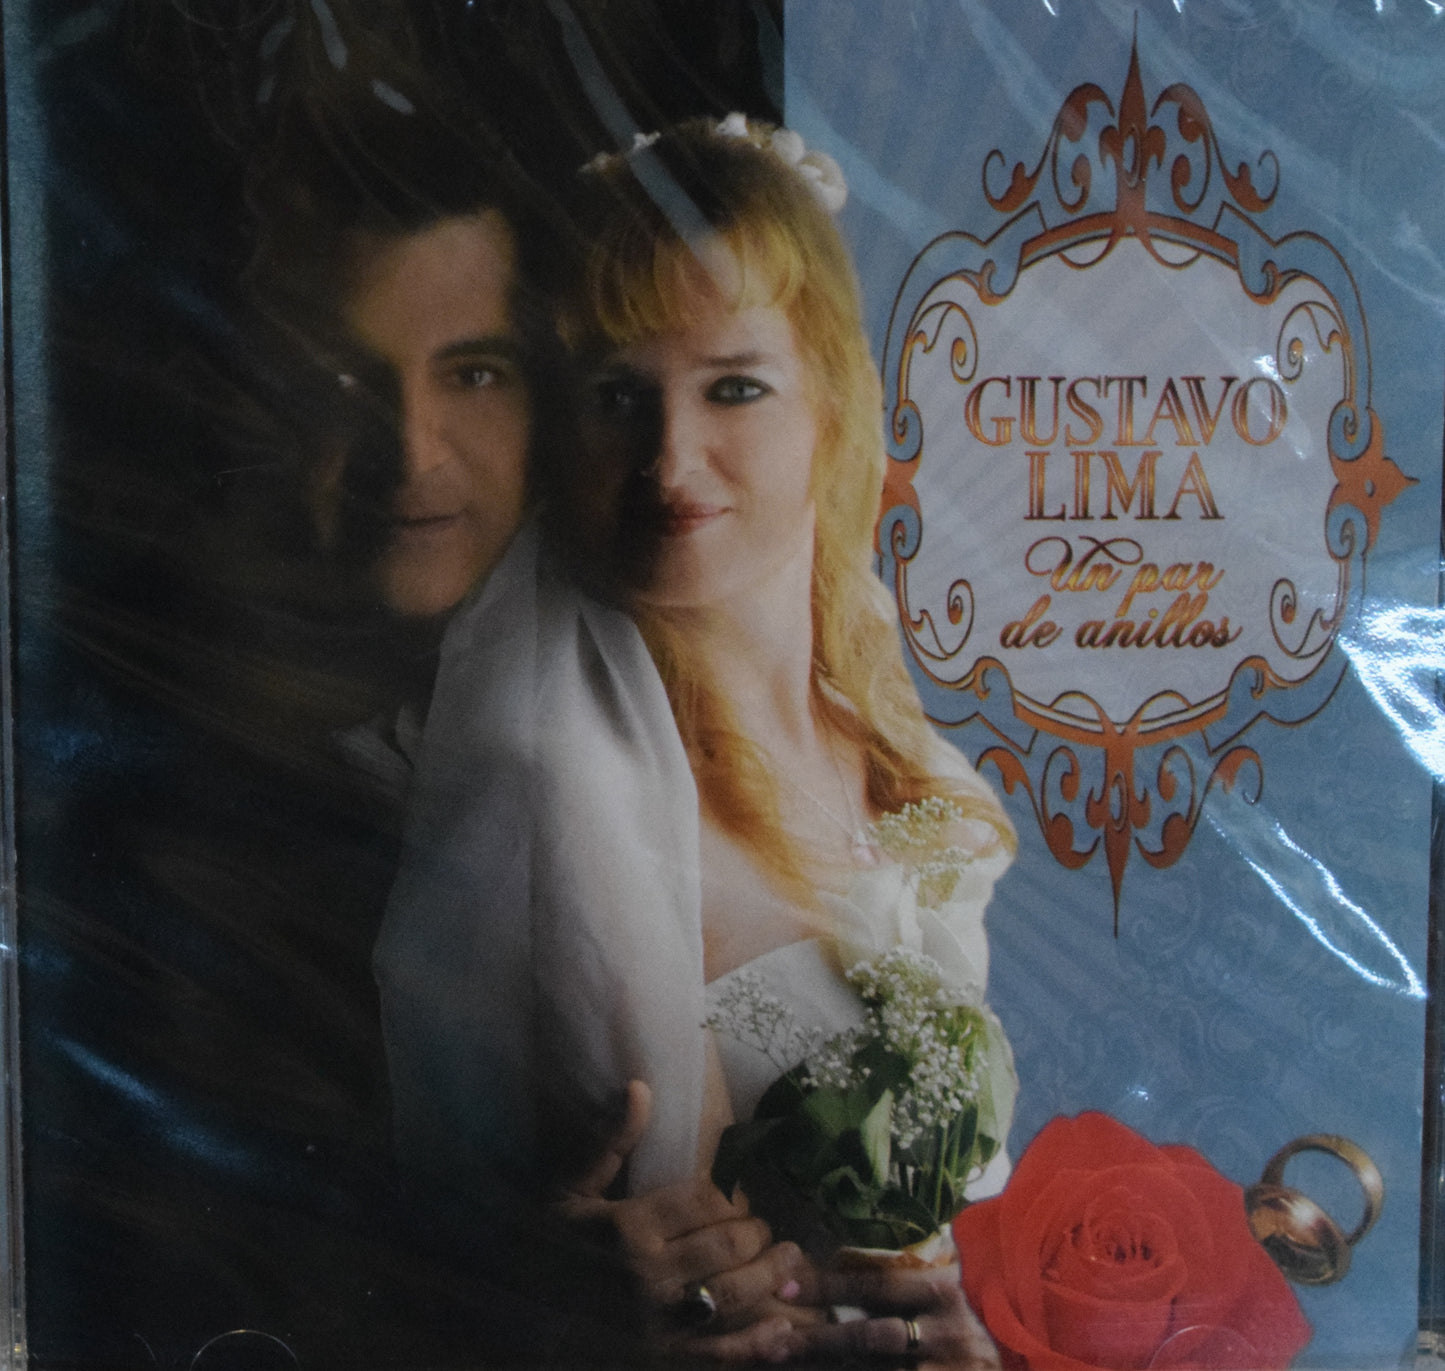 CD – Par de Anillos – Gustavo Lima